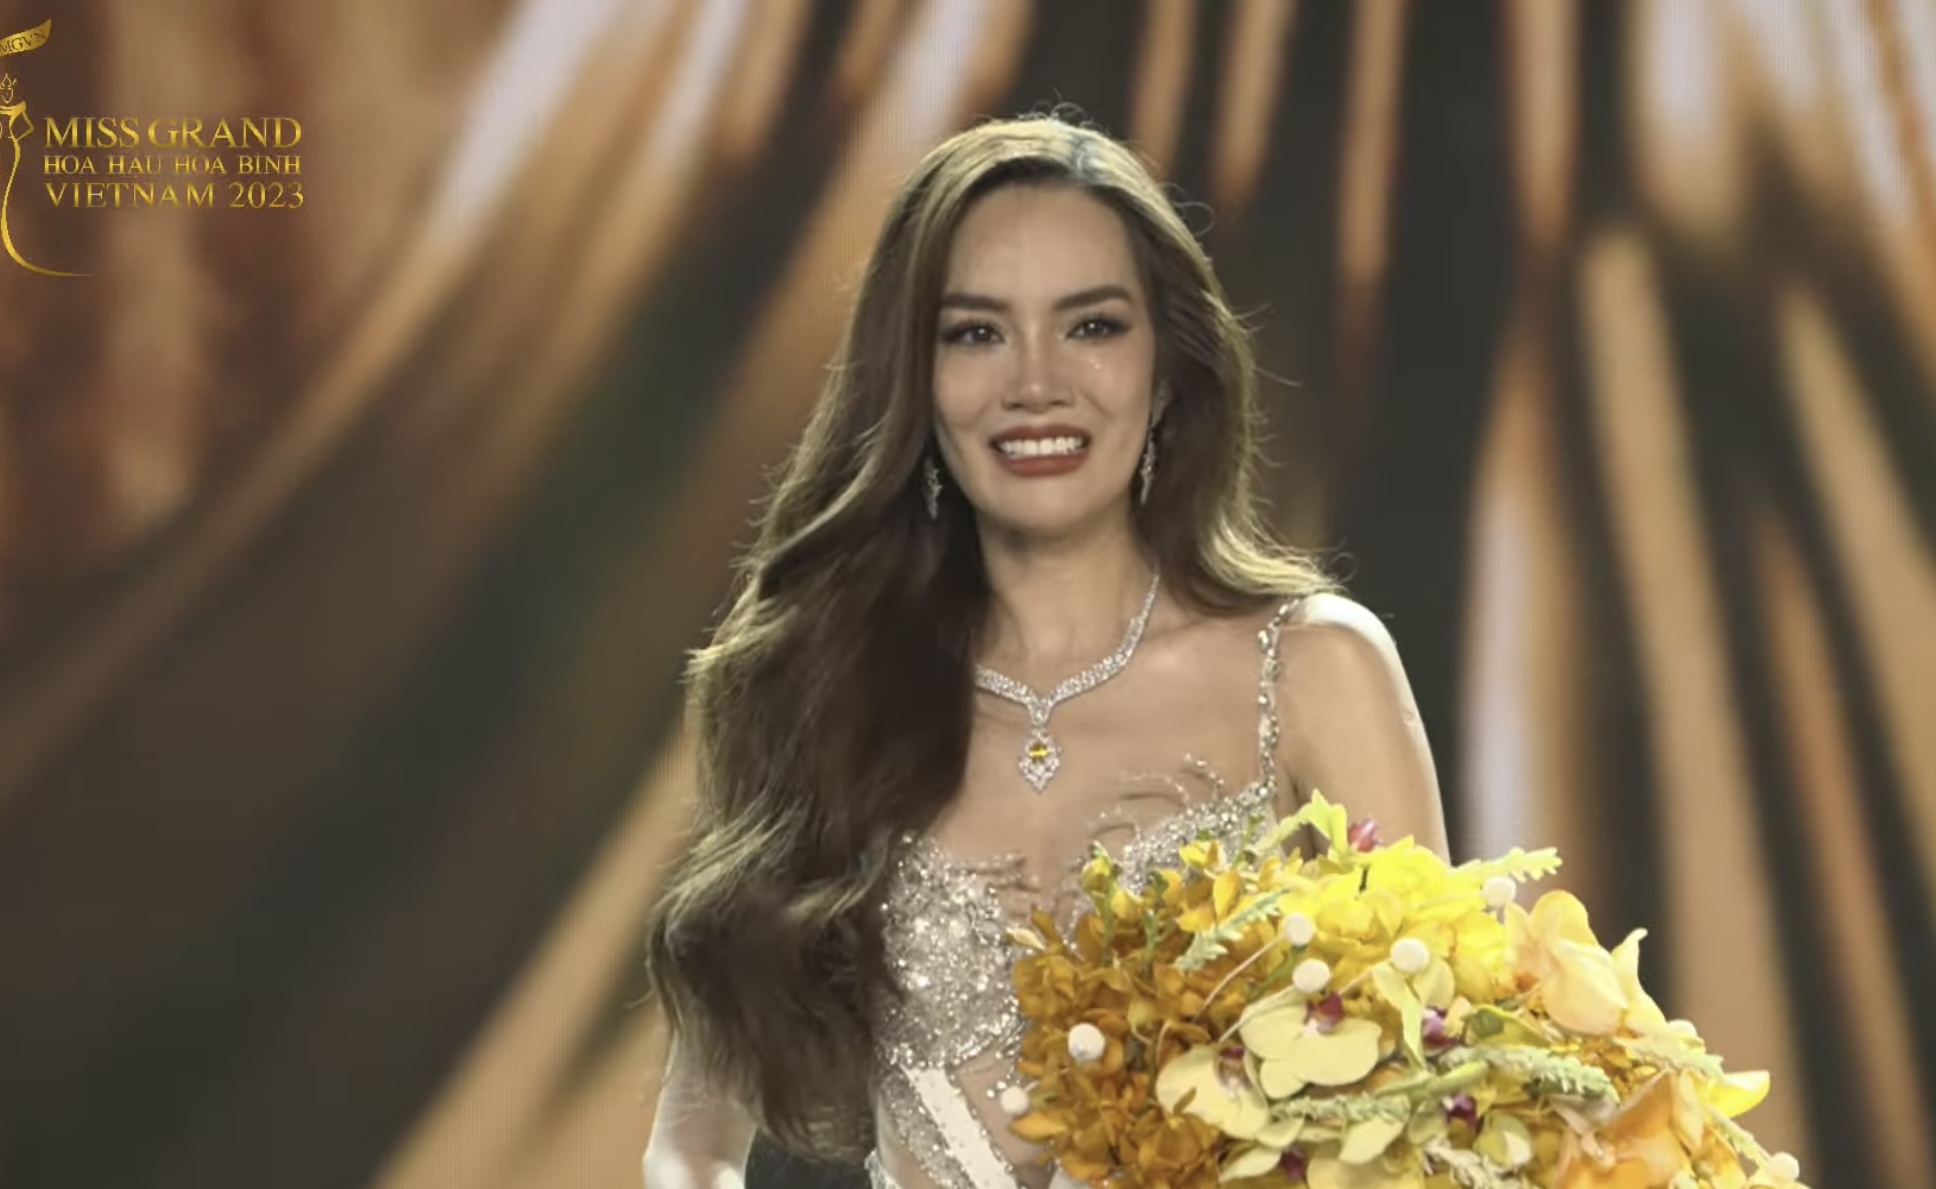 Lê Hoàng Phương chính thức đăng quang Miss Grand Vietnam 2023 - Ảnh 1.